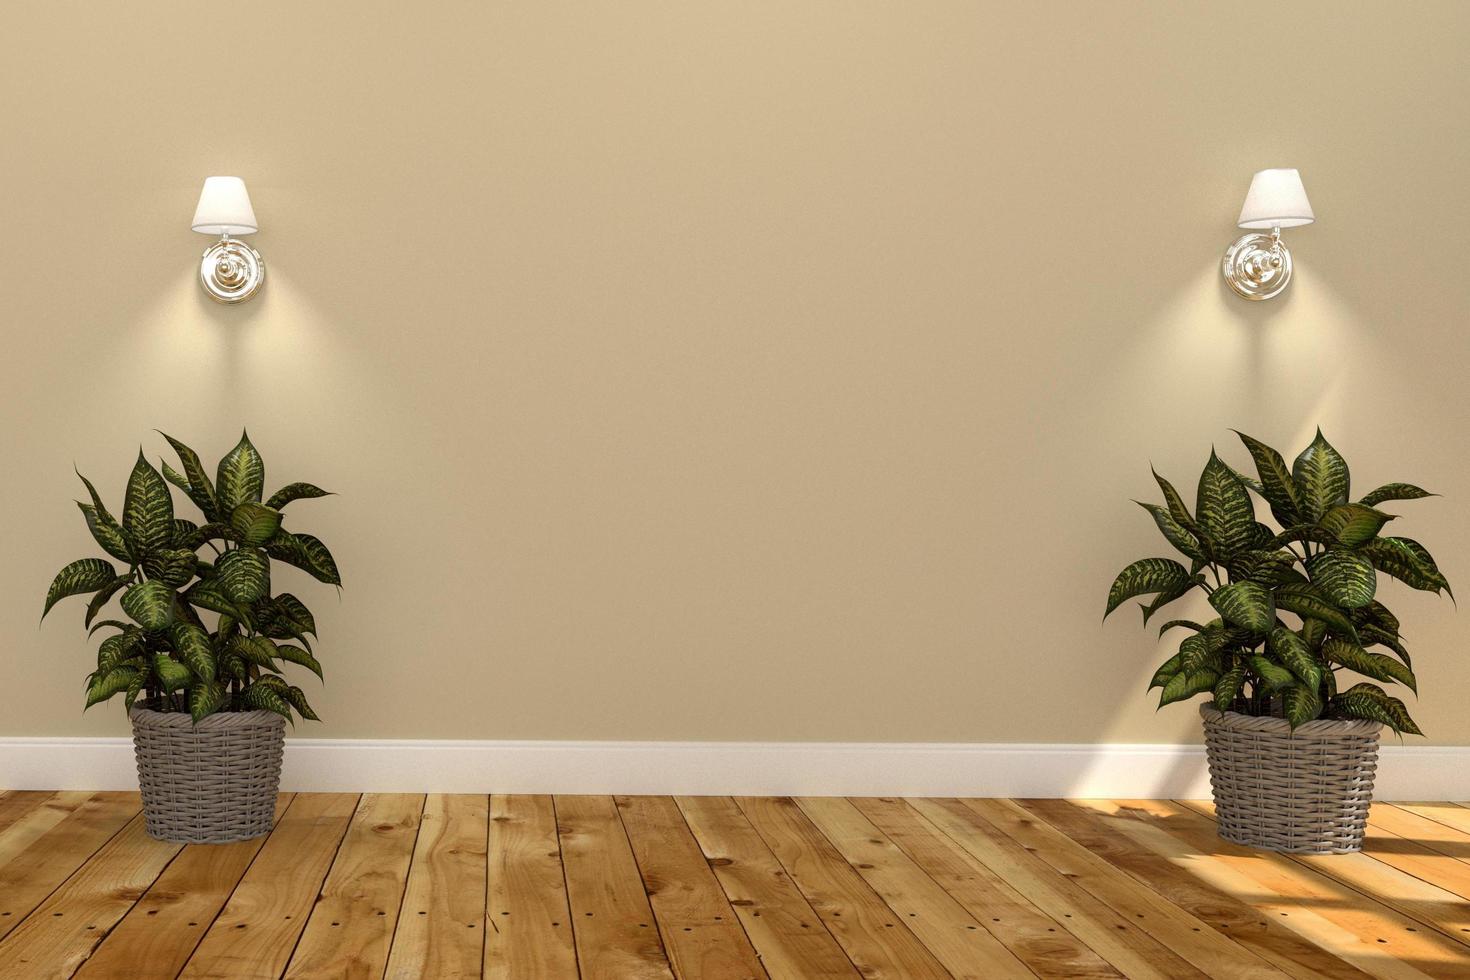 vardagsrum interiör, växter trä på gul vägg bakgrund. 3d-rendering foto